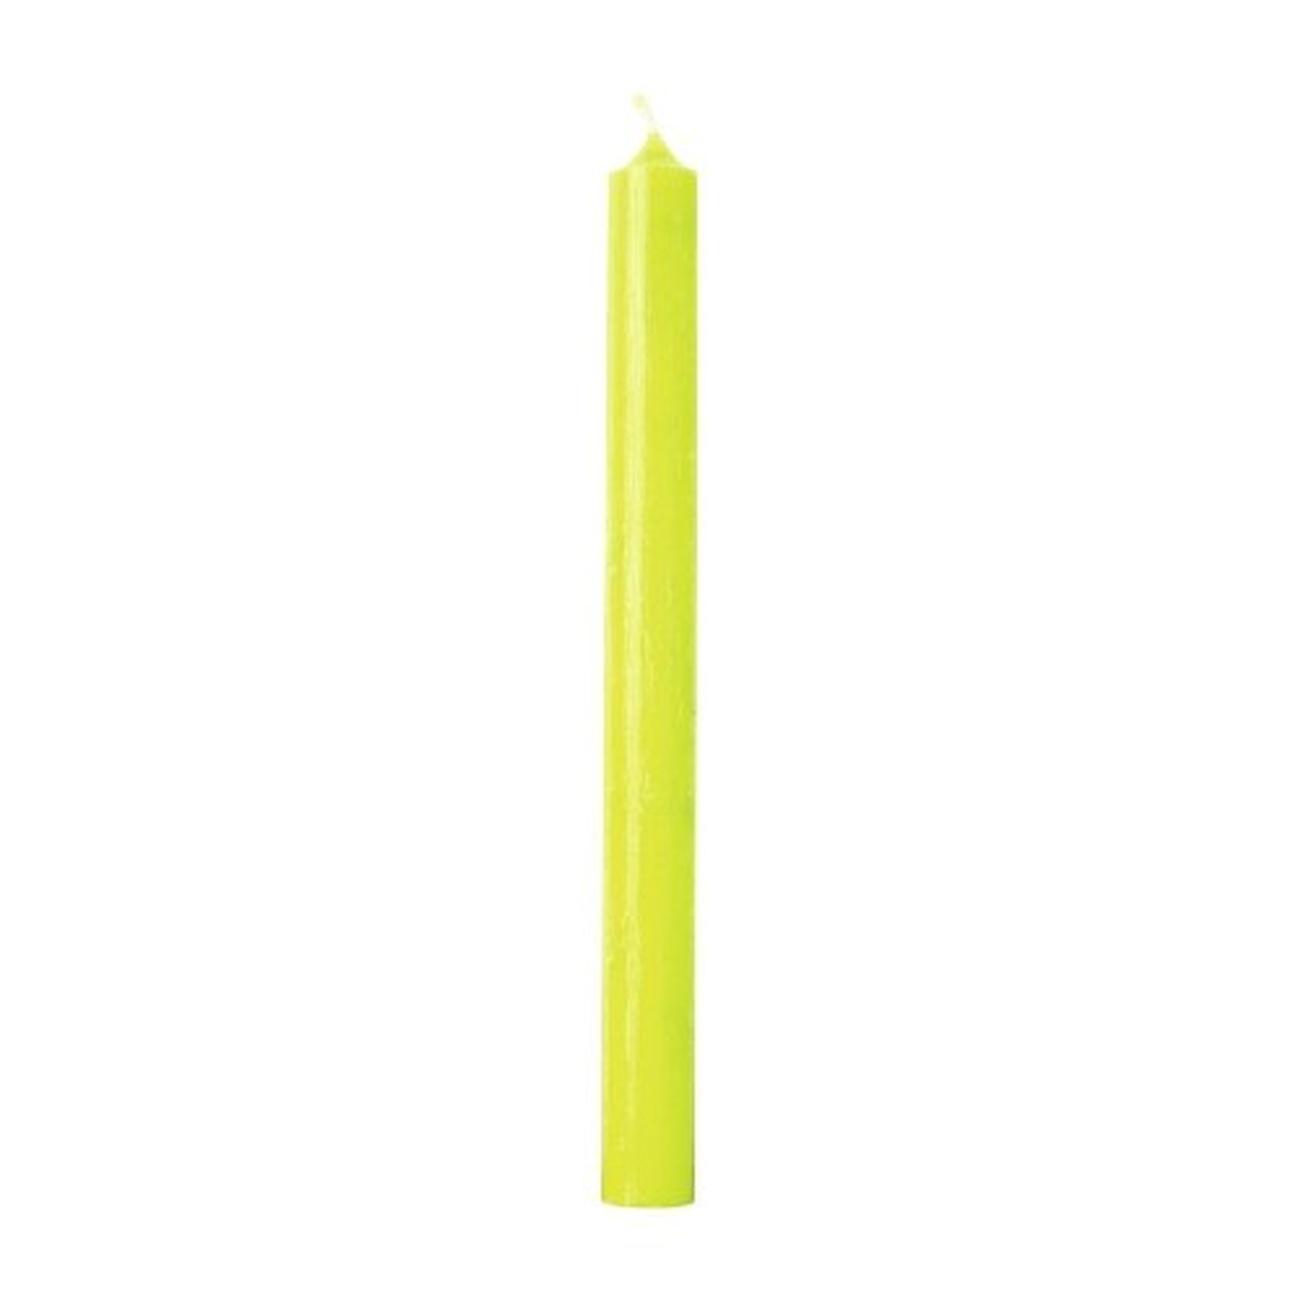 ihr-cylinder-candle-light-green-bright - IHR Cylinder Candle Light Green Bright